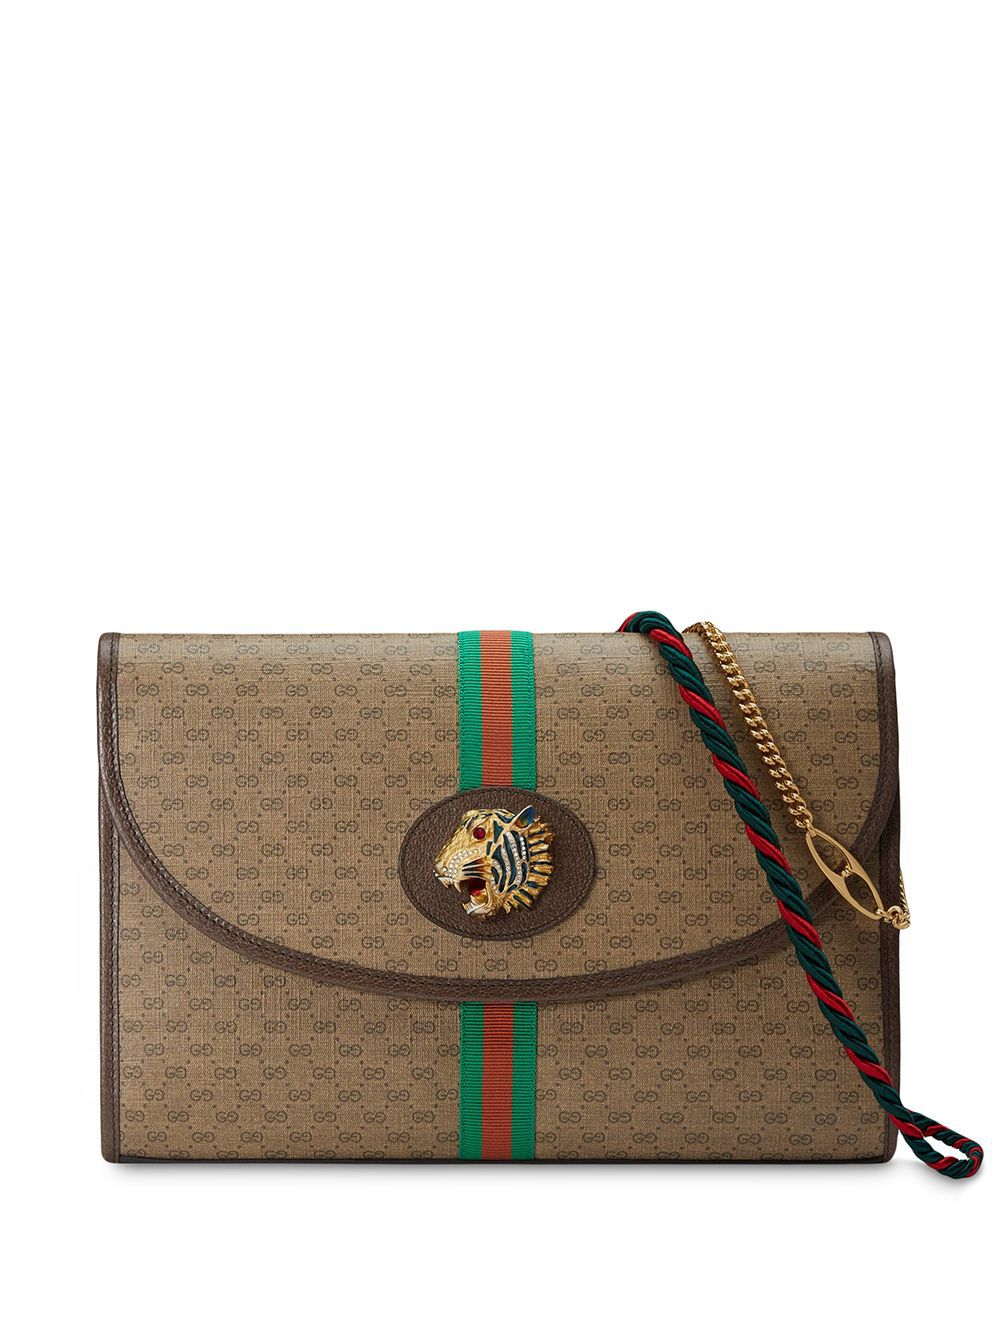 фото Gucci сумка на плечо rajah gg среднего размера